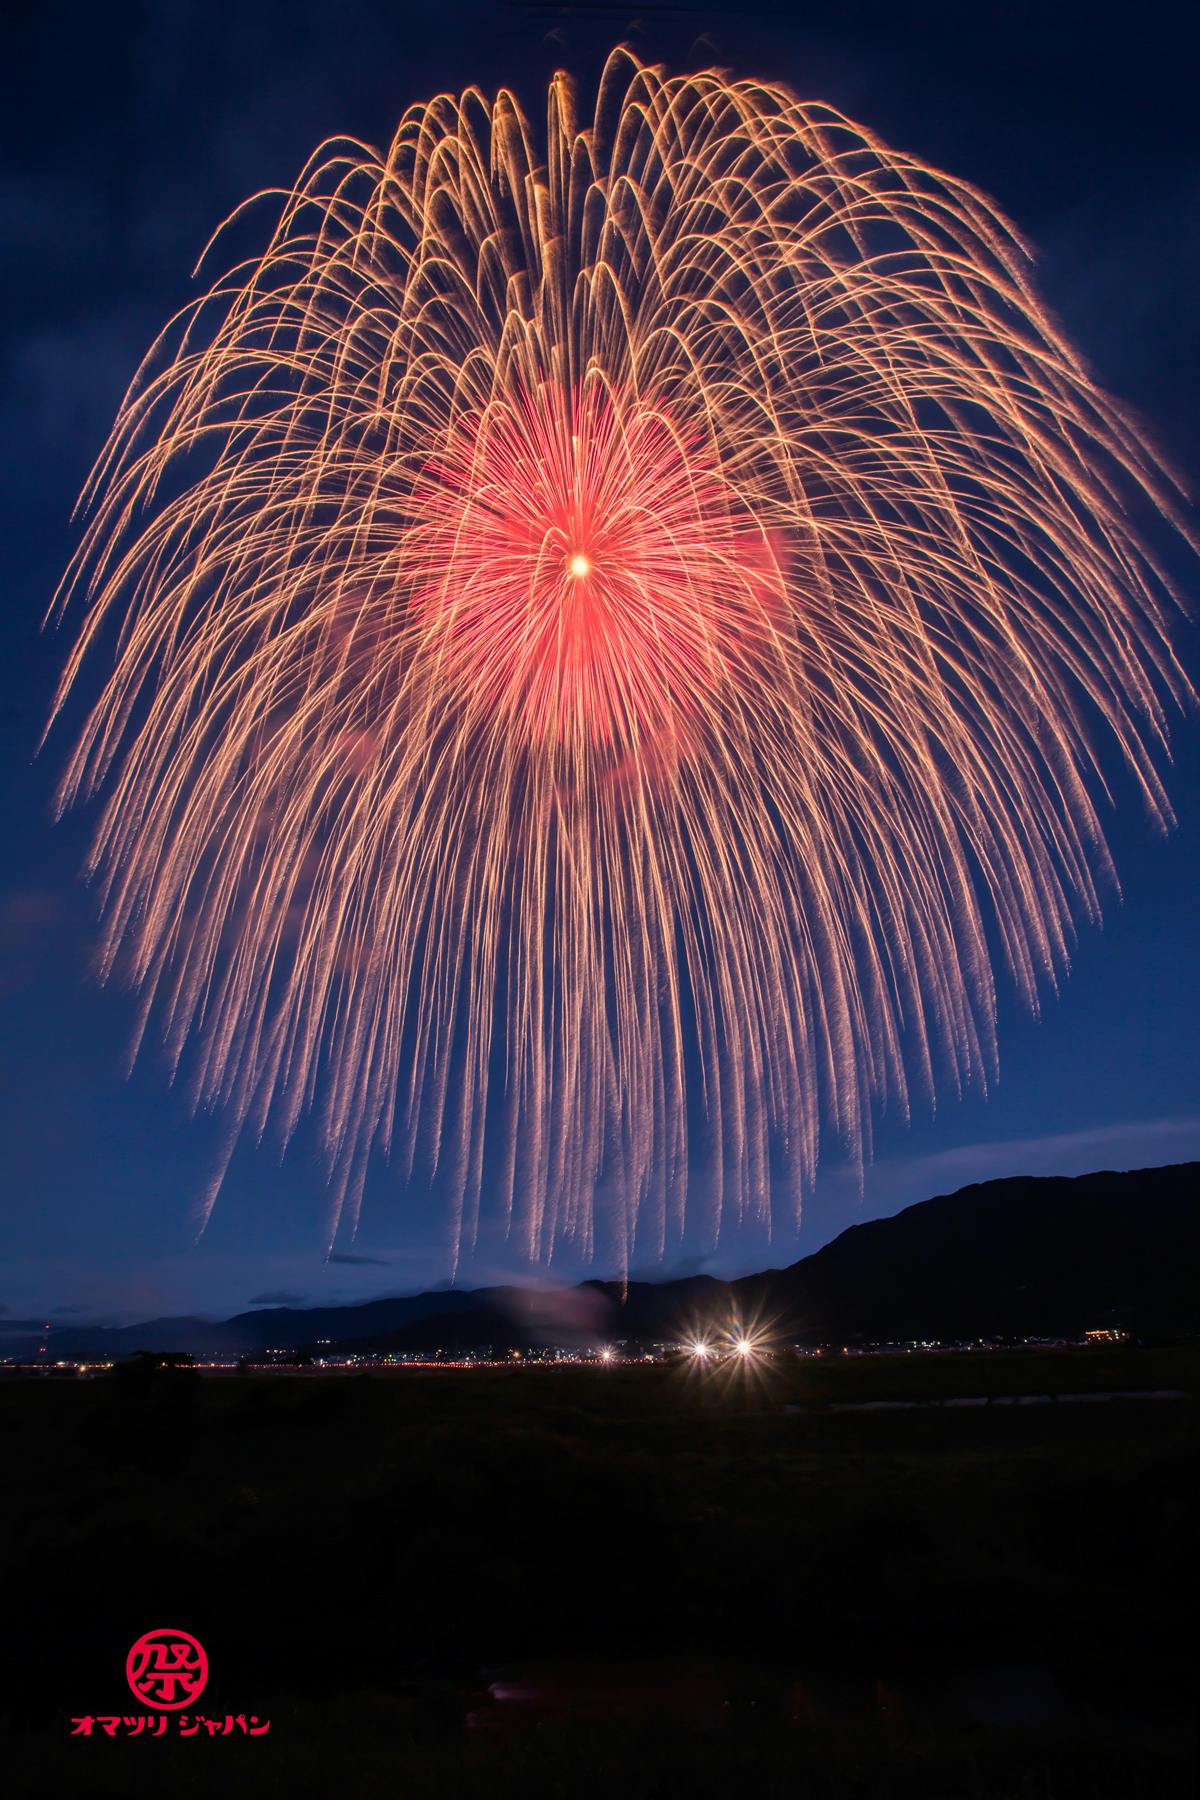 尺玉以上の大きな花火が見られる8月のおすすめ花火大会10選 オマツリジャパン あなたと祭りをつなげるメディア